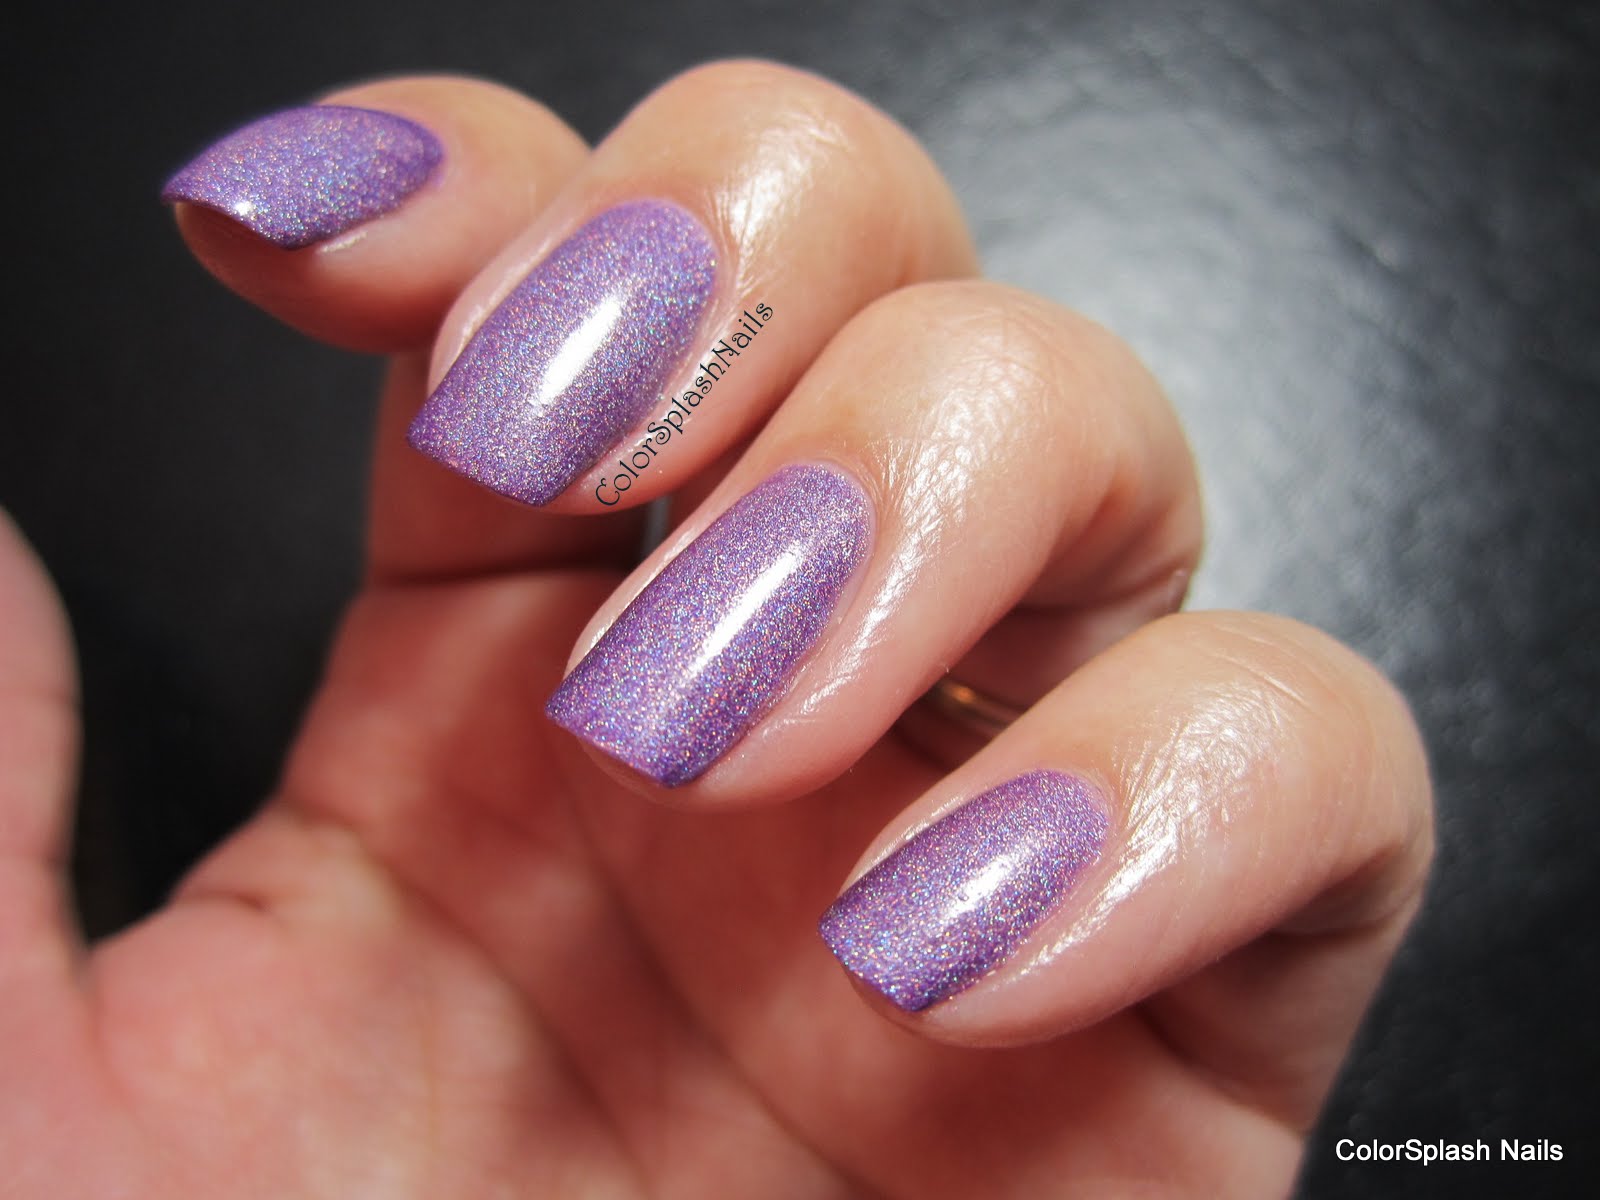 Colorsplash Nails: Liquid Sky Lacquer Iris Illusion